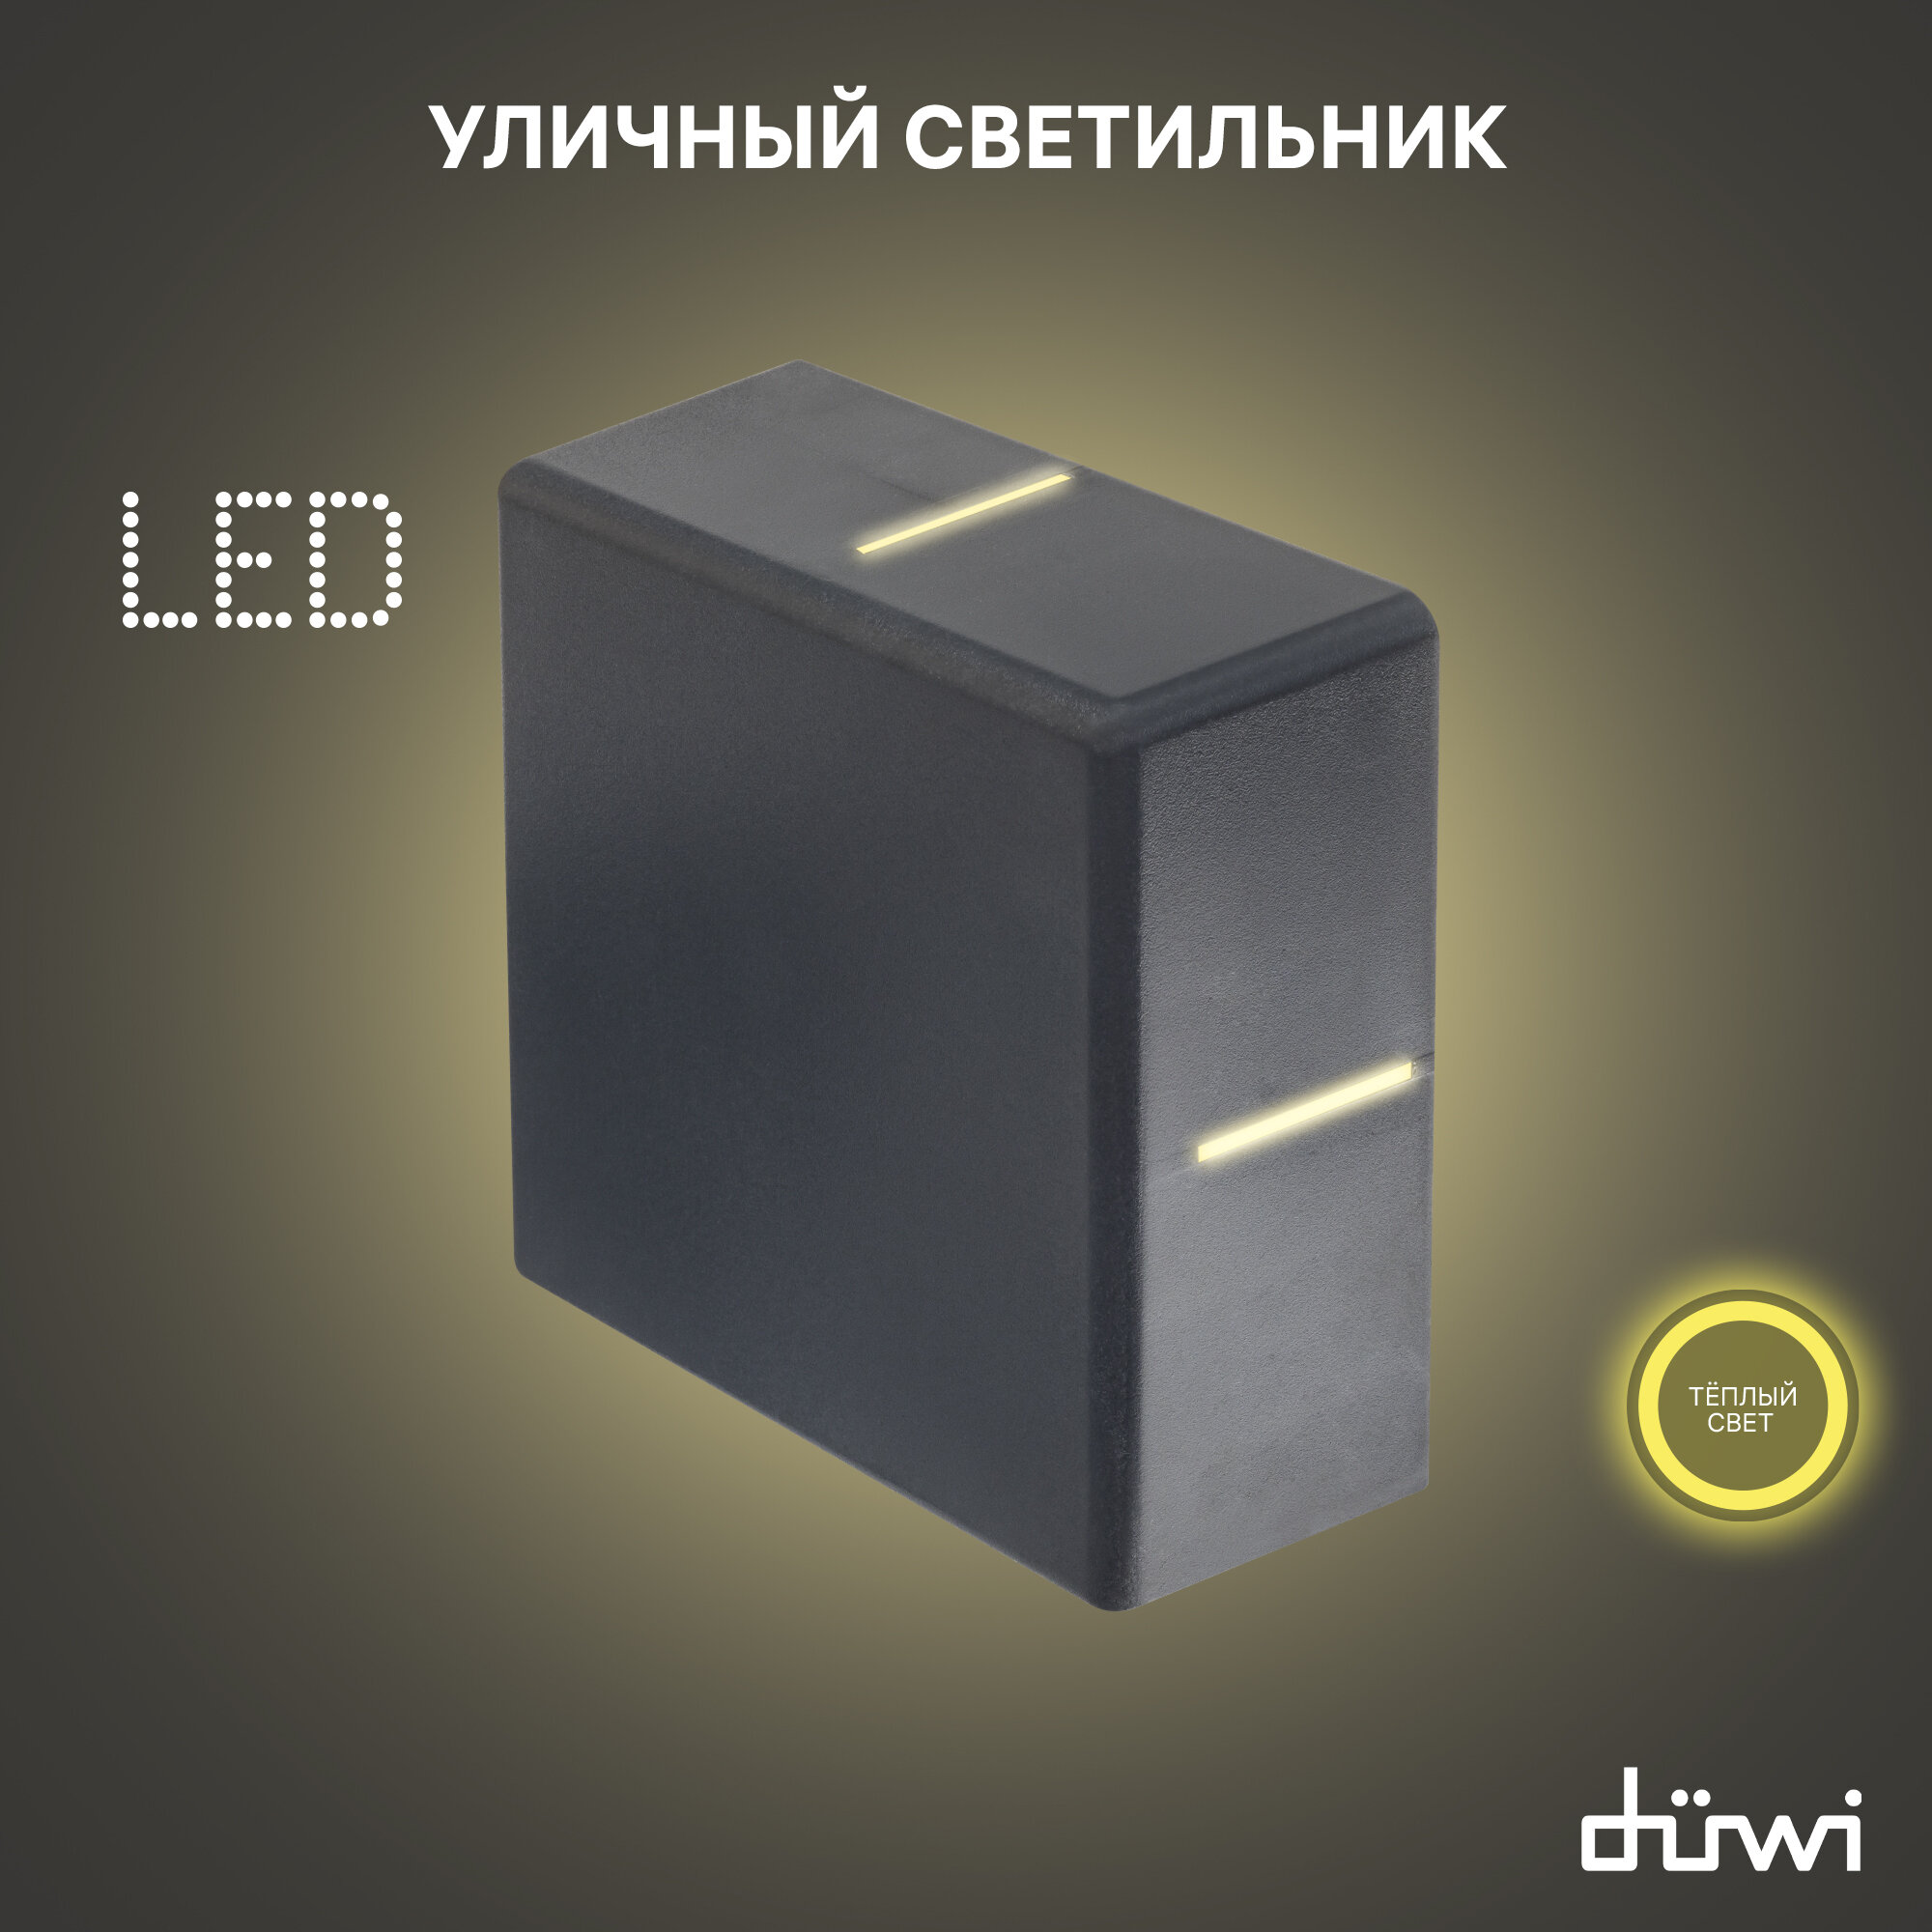 Светильник светодиодный архитектурный Nuovo LED 7W, IP54, 3000K, серый, duwi 24273 4